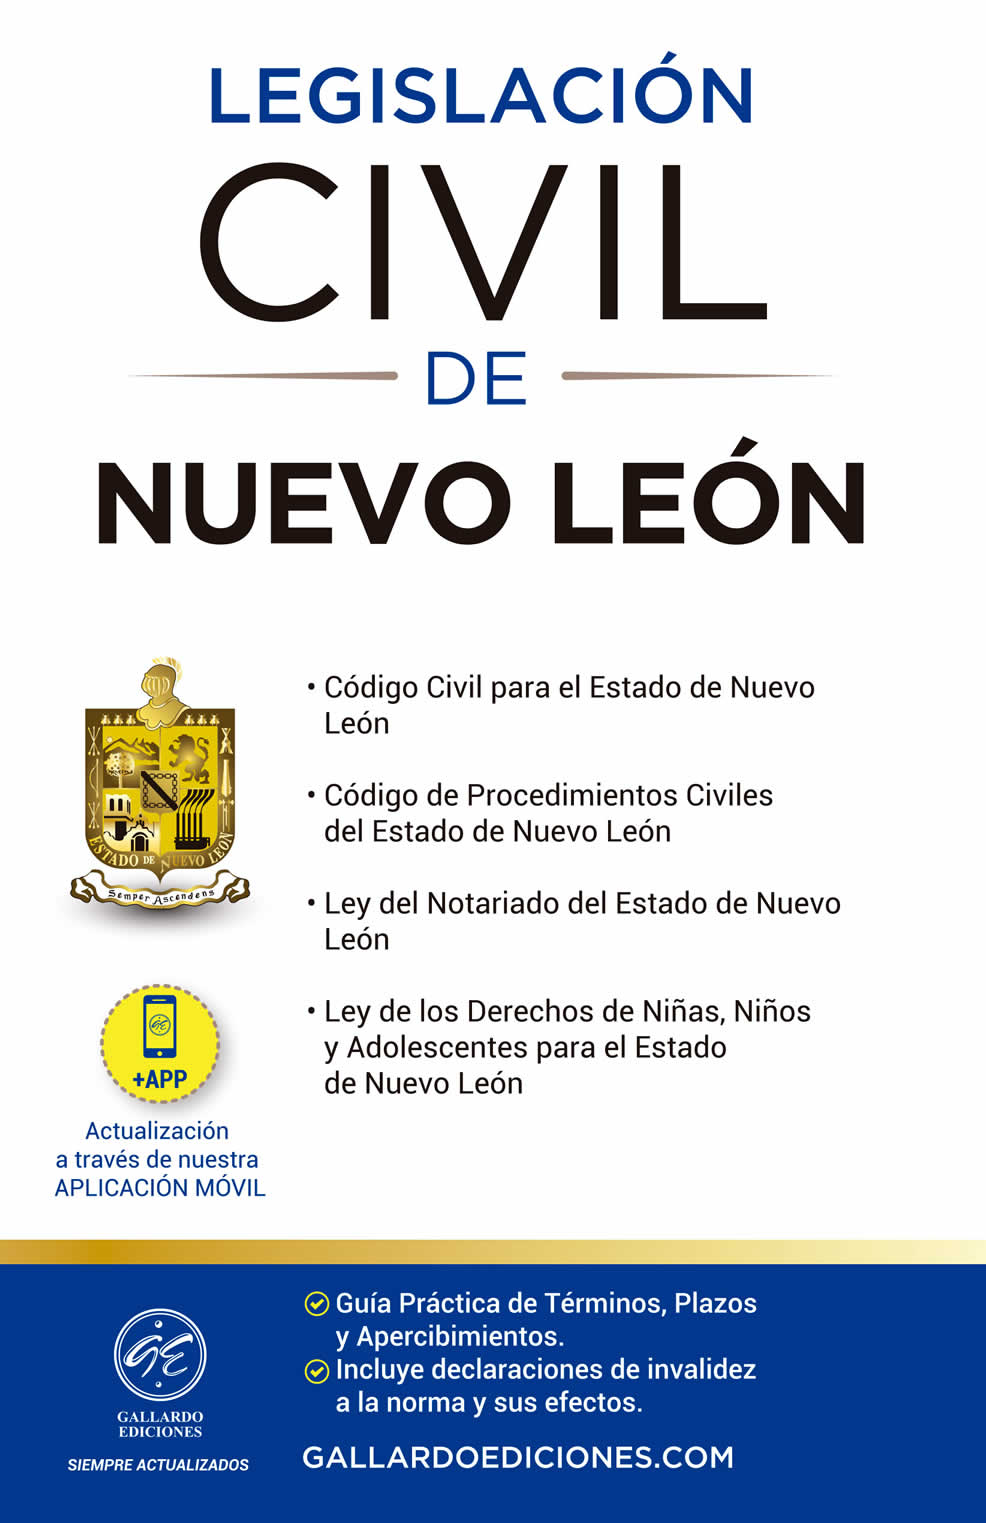 Legislación Civil de Nuevo León 2021 Gallardo Ediciones